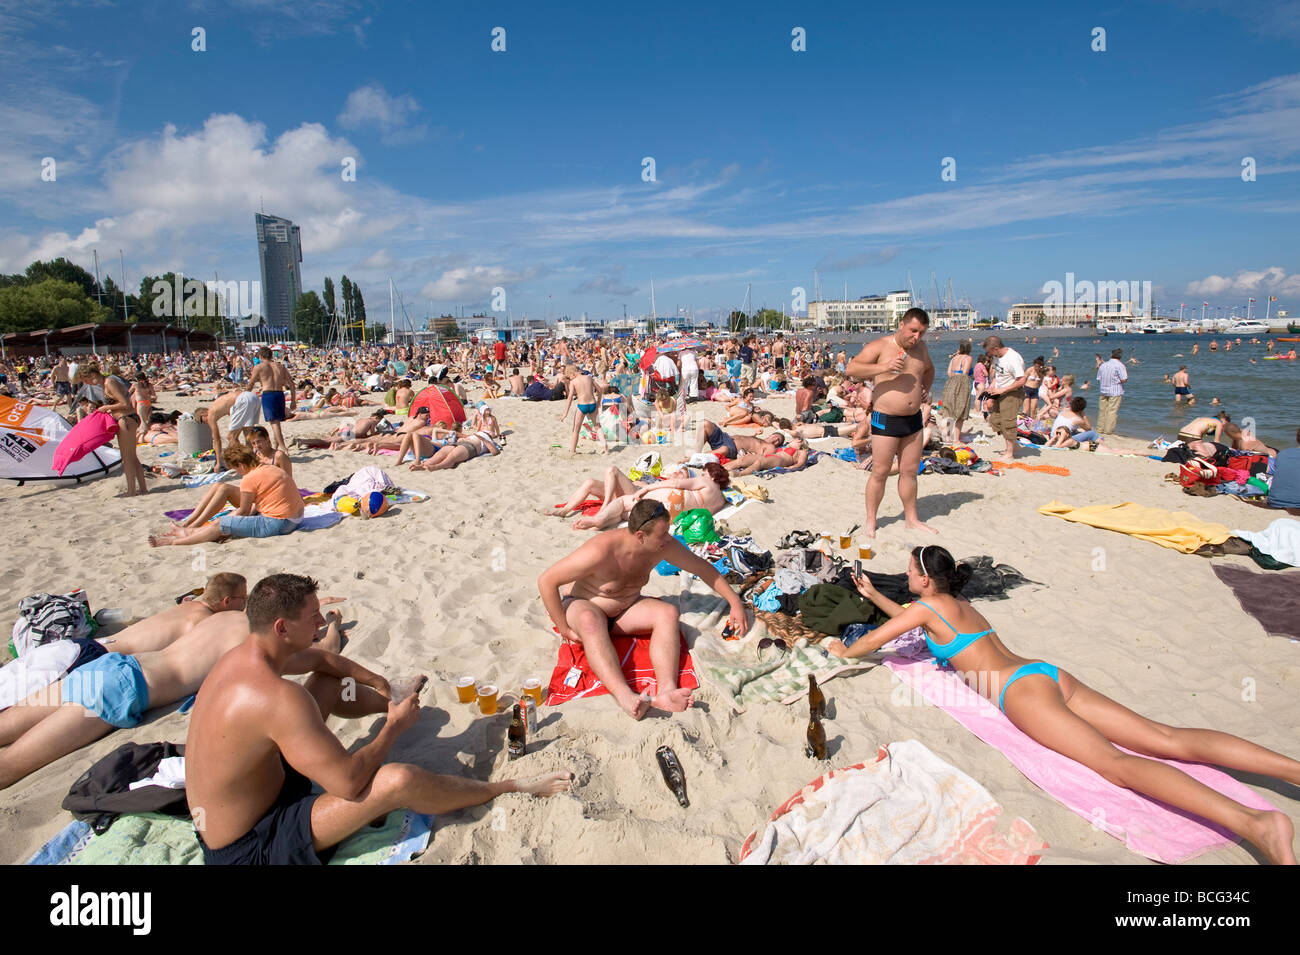 Les gens en train de bronzer sur une plage de sable fin de la mer Baltique Gdynia Pologne Banque D'Images